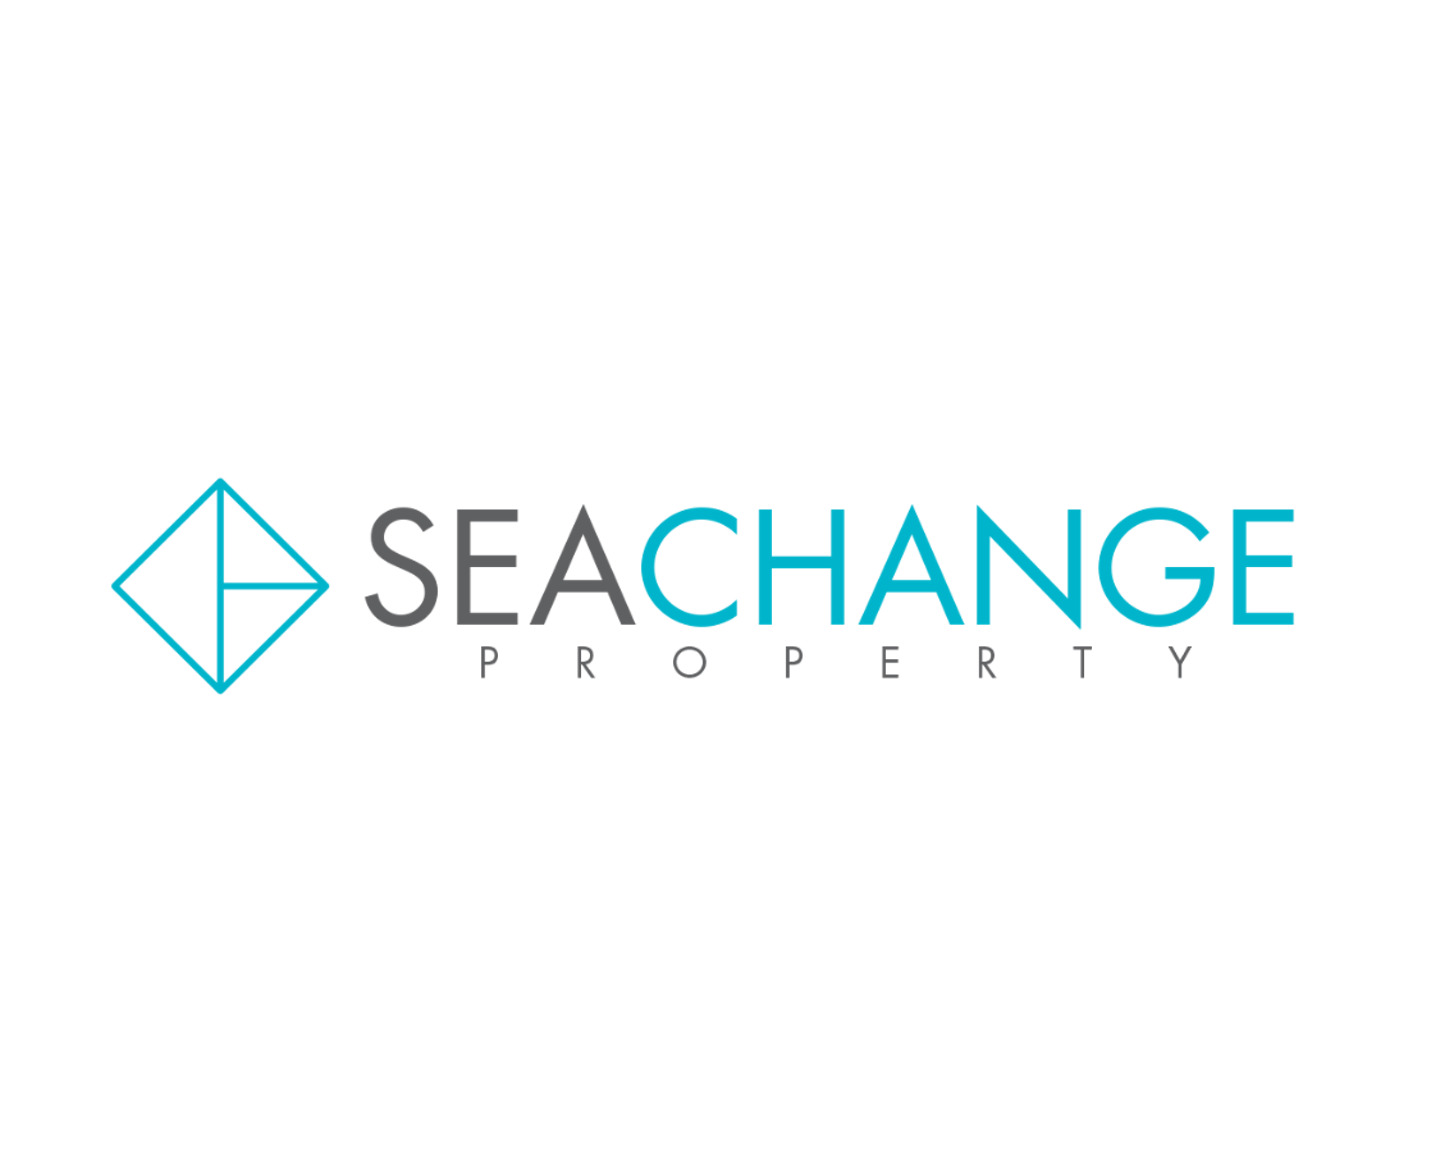 Seachange property logo